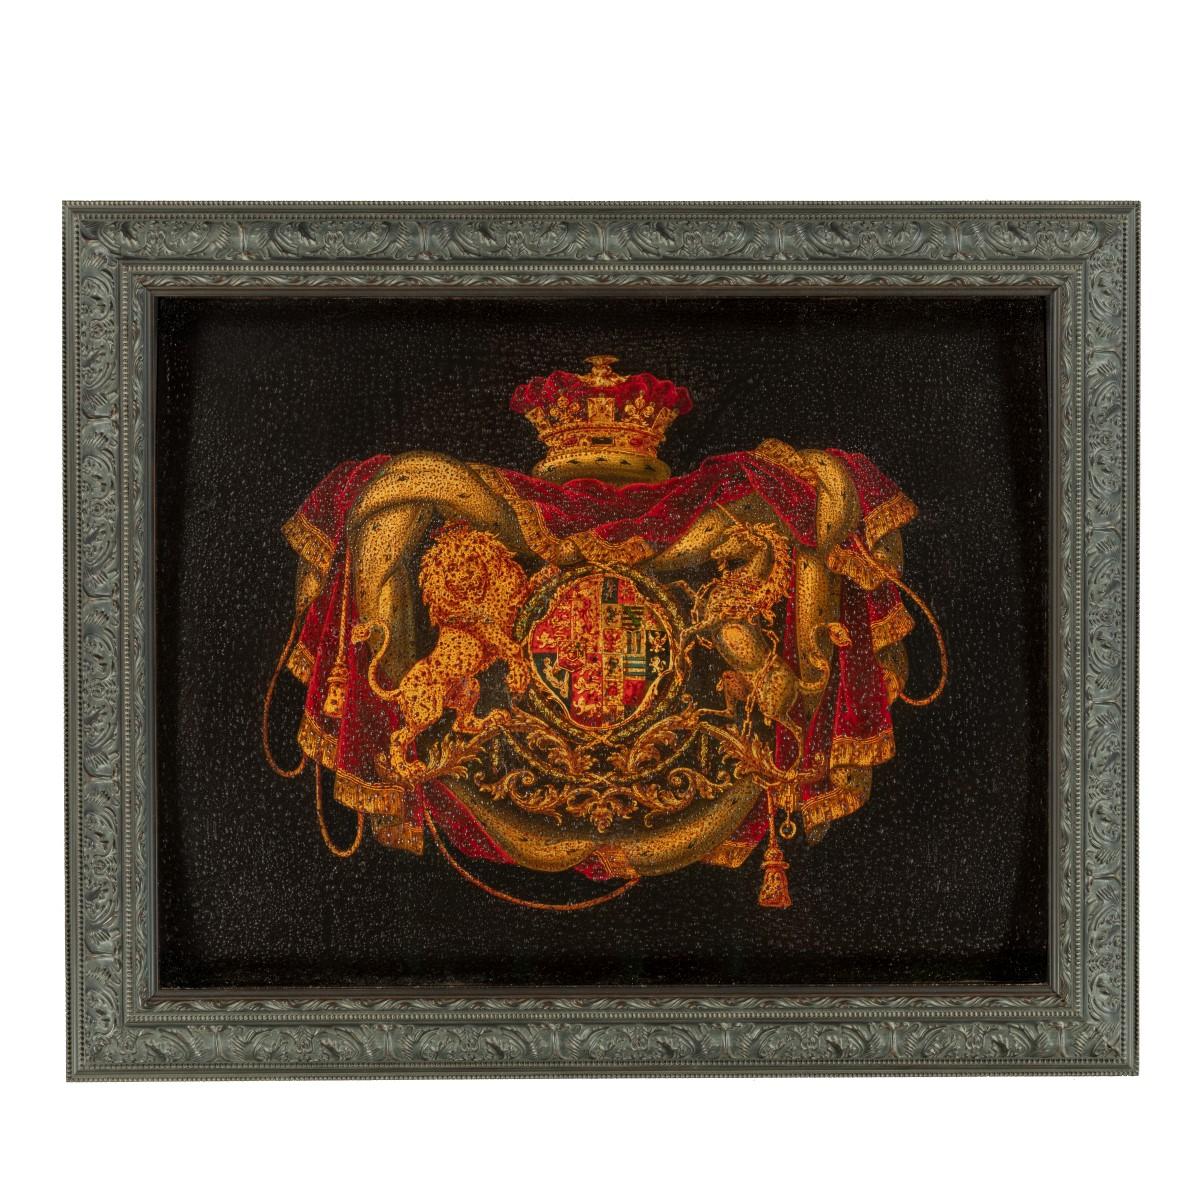 Ces deux panneaux de bois sont de forme rectangulaire, l'un avec des coins arrondis. Chacune est peinte d'un grand blason royal flanqué d'un lion et d'une licorne, surmonté d'une couronne de reine et d'un lambrequin de velours rouge garni d'hermine,